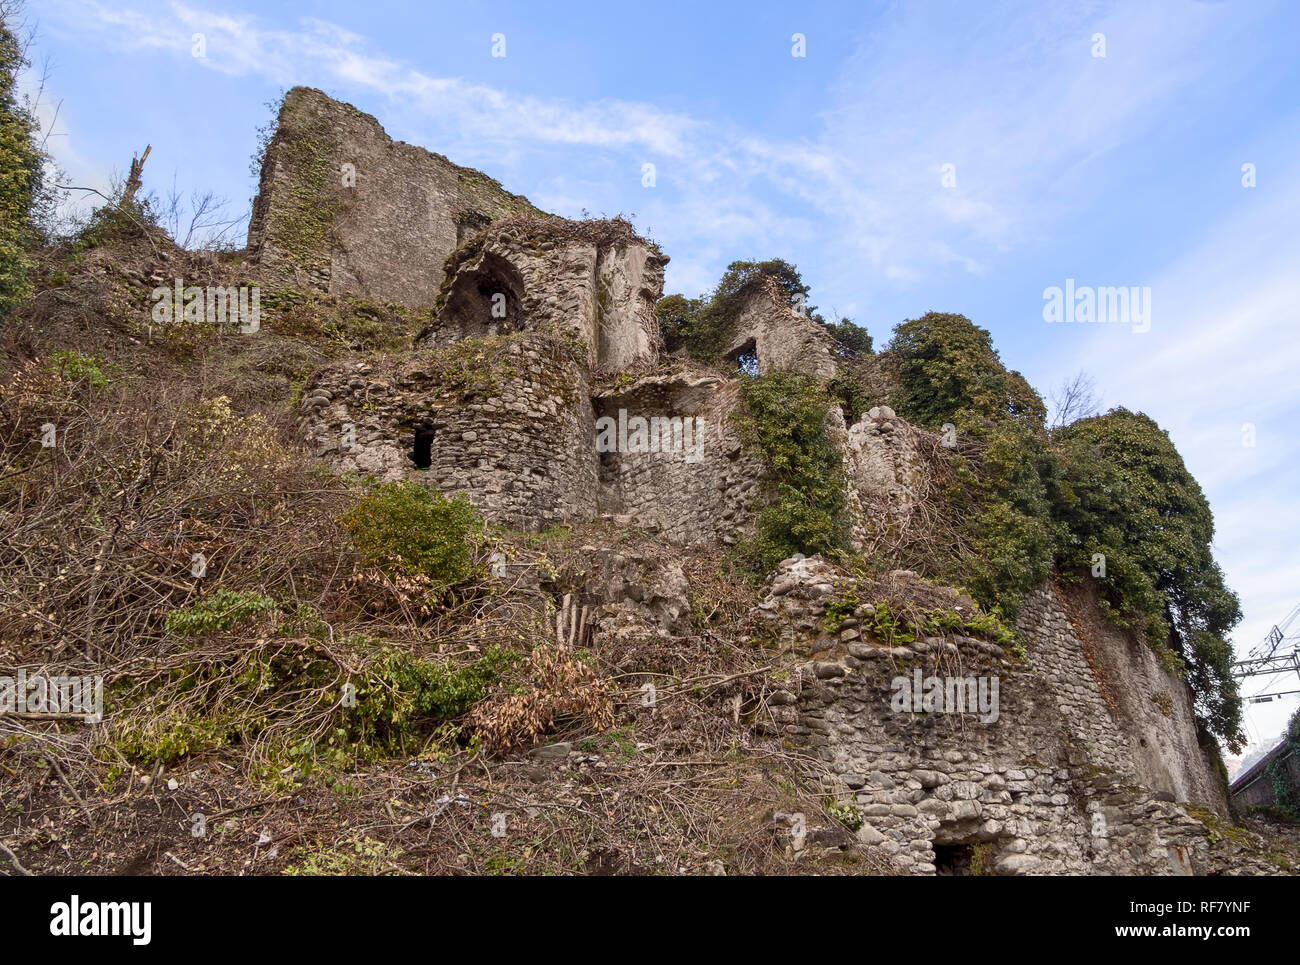 Abschnitt des alten Malnido Burgruinen in Villafranca in Lunigiana, Italien. Beseitigung von Vegetation in Arbeit Januar 2019. Stockfoto